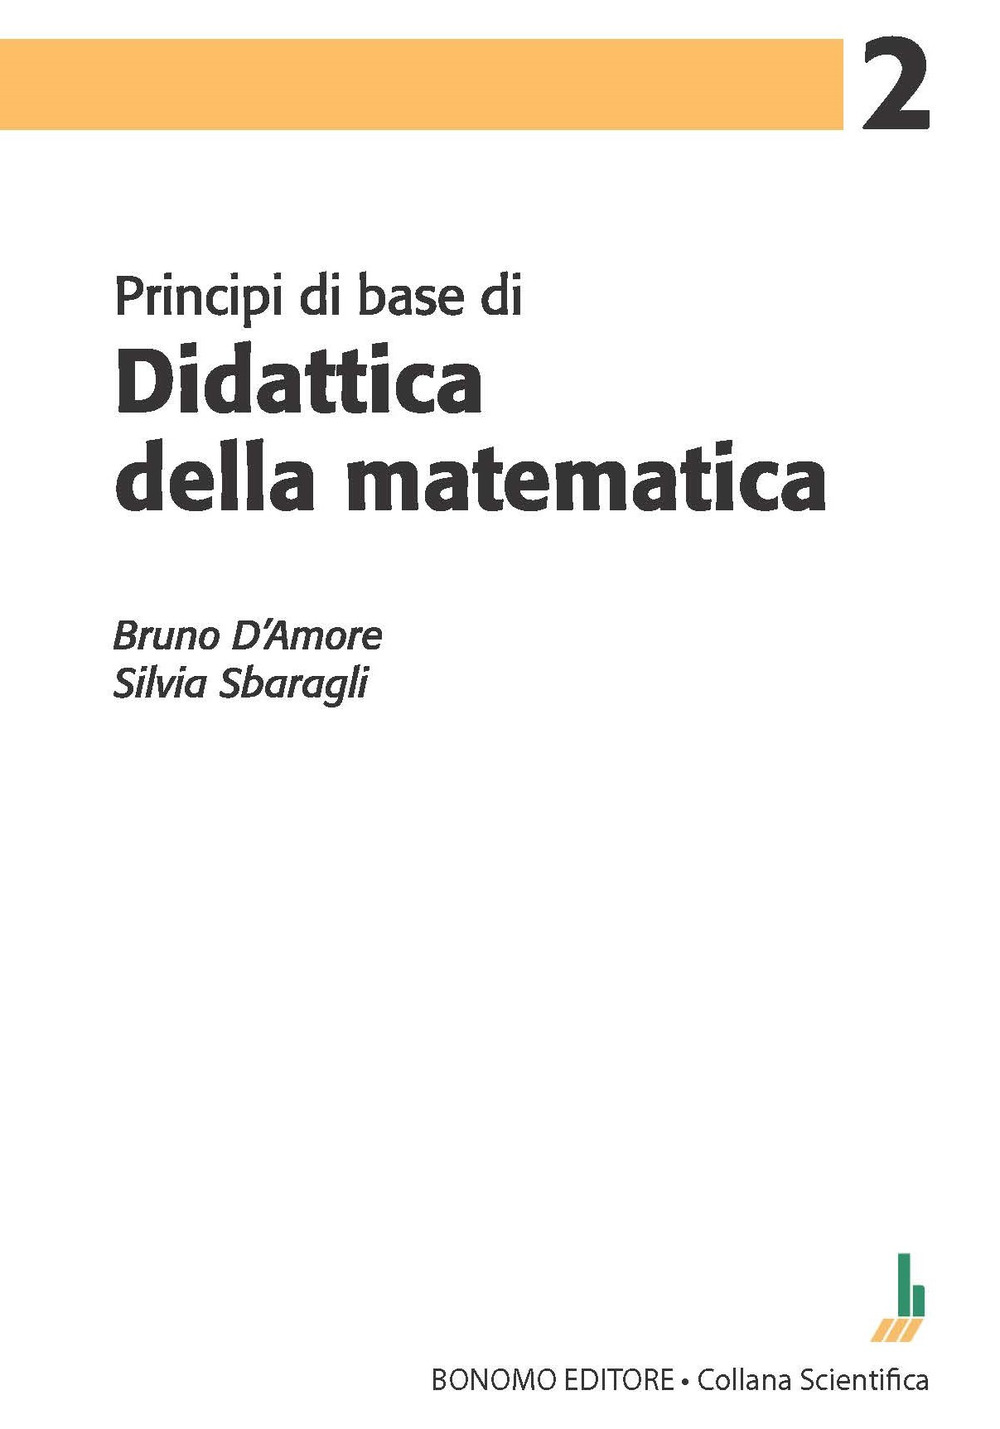 Principi di base di didattica della matematica